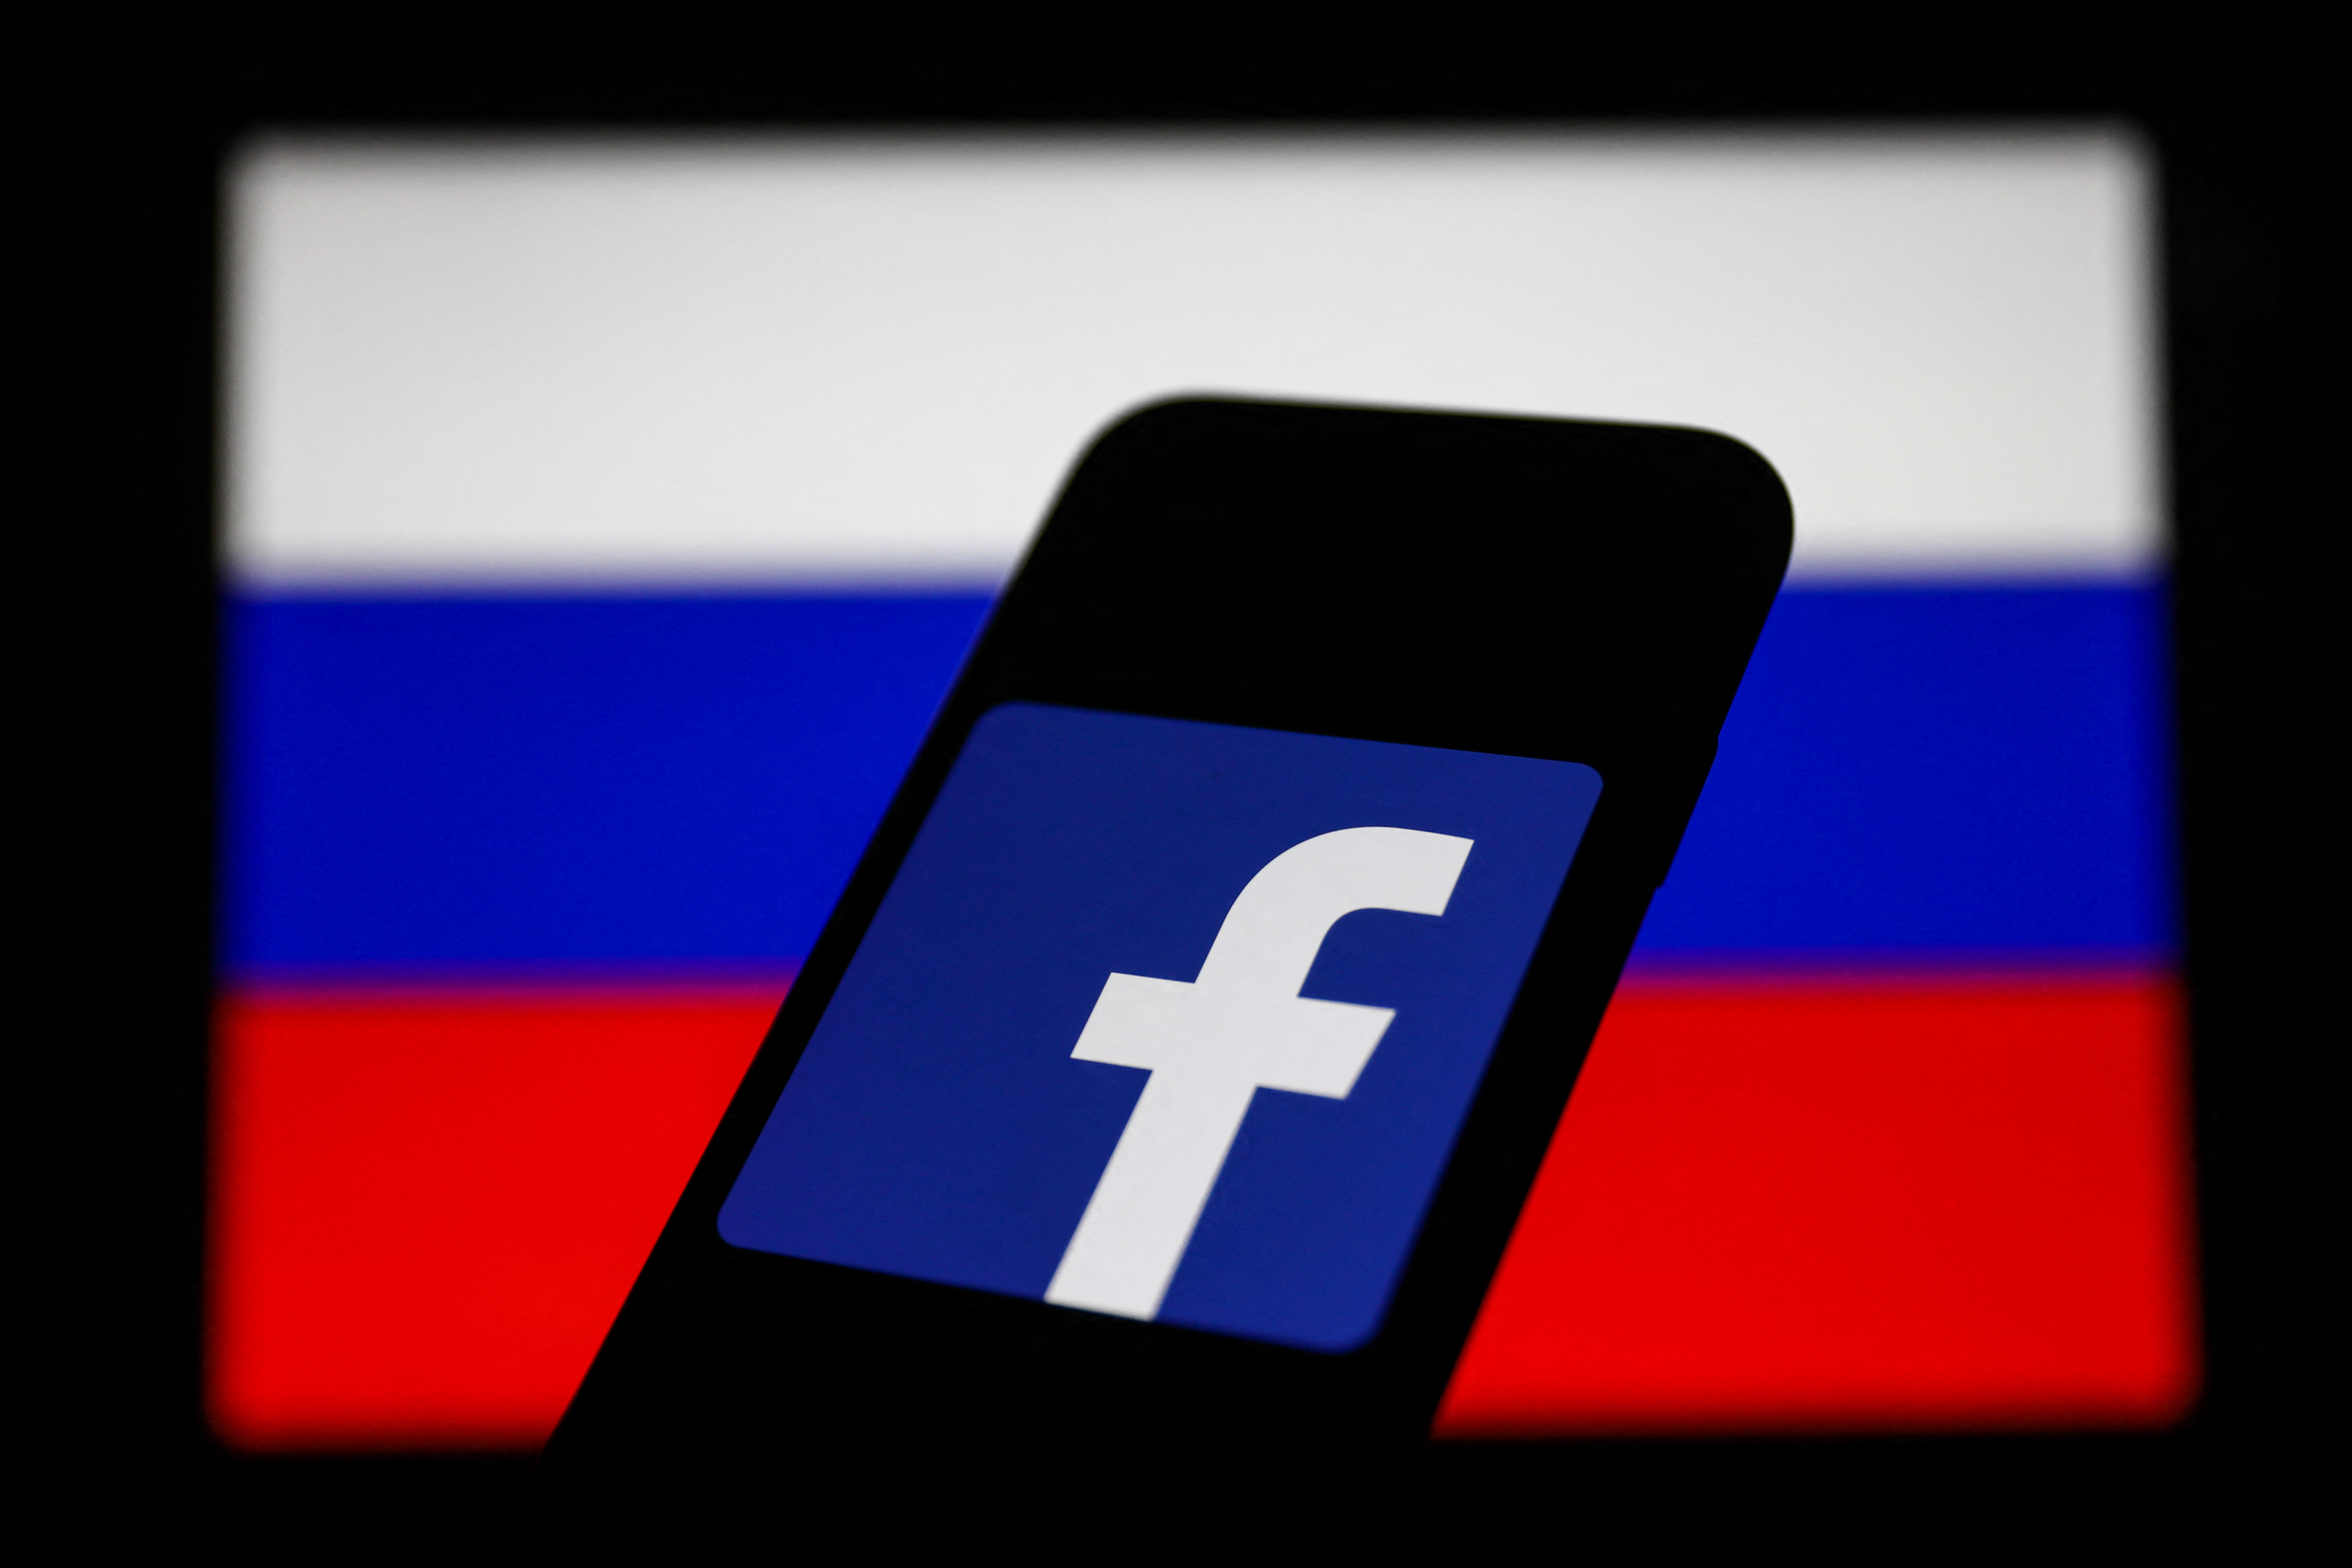 A Kreml kemény fellépést ígért a Metának, ha az engedi az oroszok elleni erőszakra felbujtást a Facebookon és az Instagramon